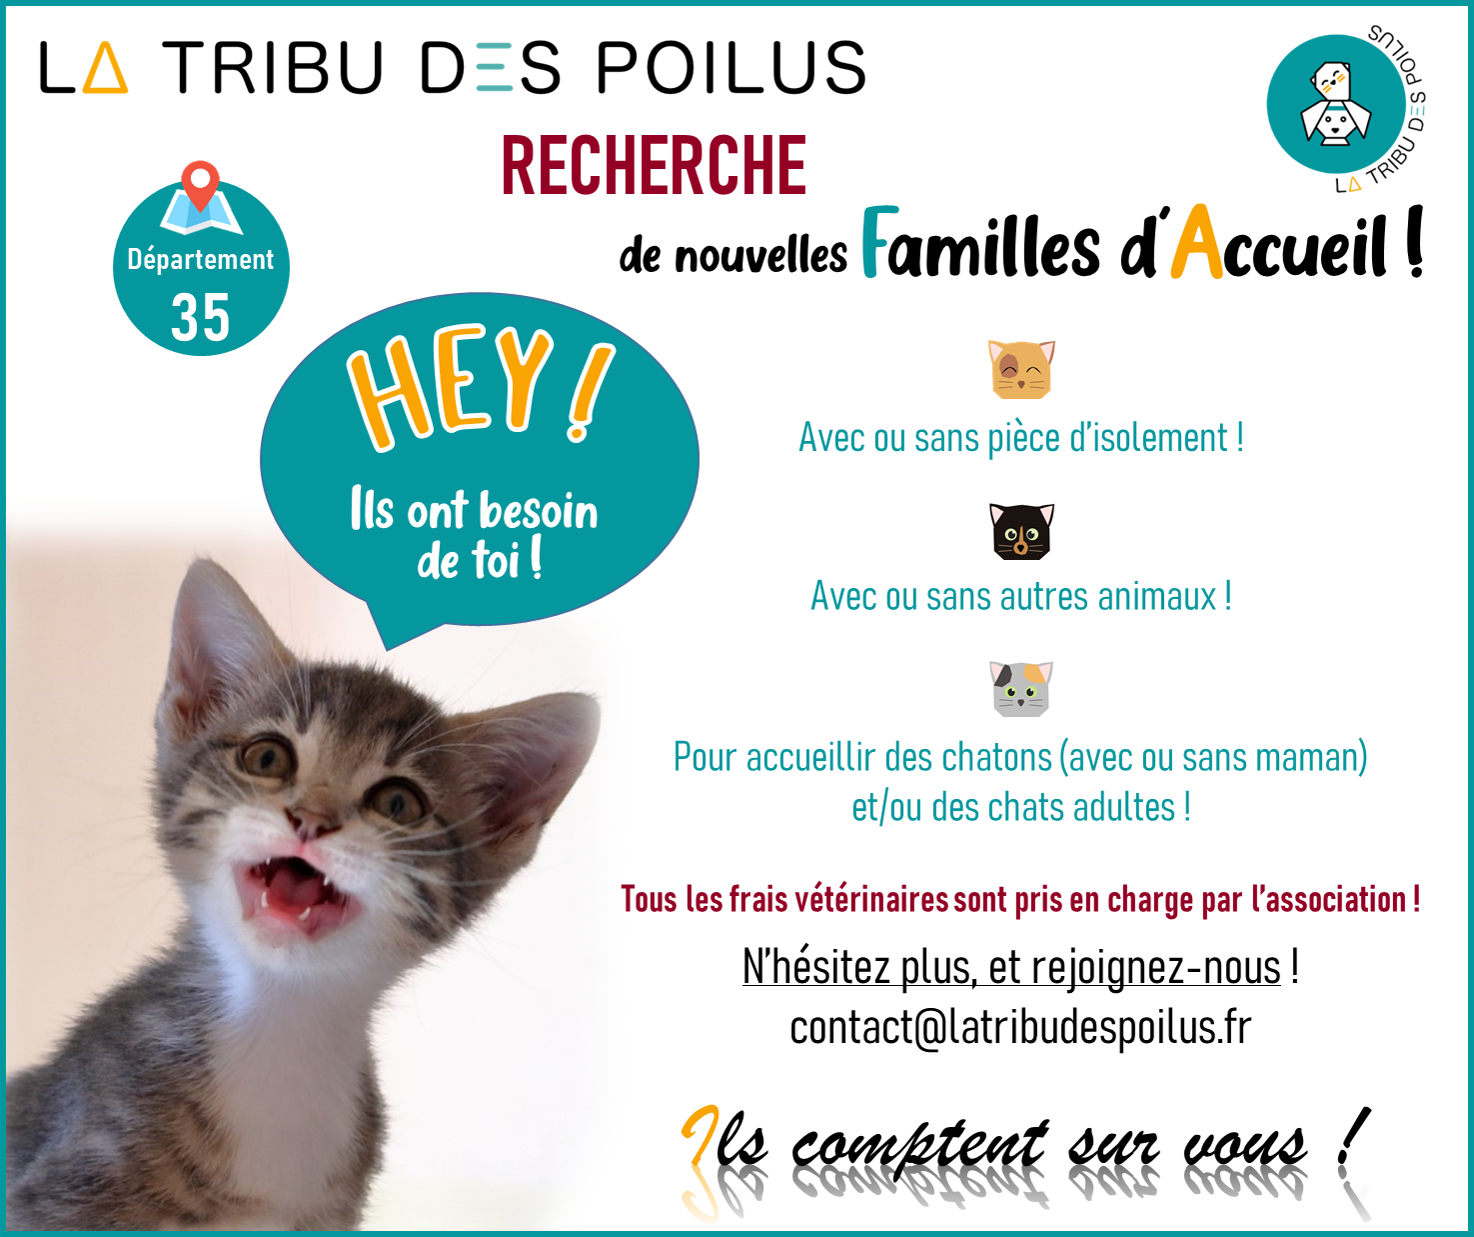 La Tribu des Poilus cherche des familles d'accueils chats !